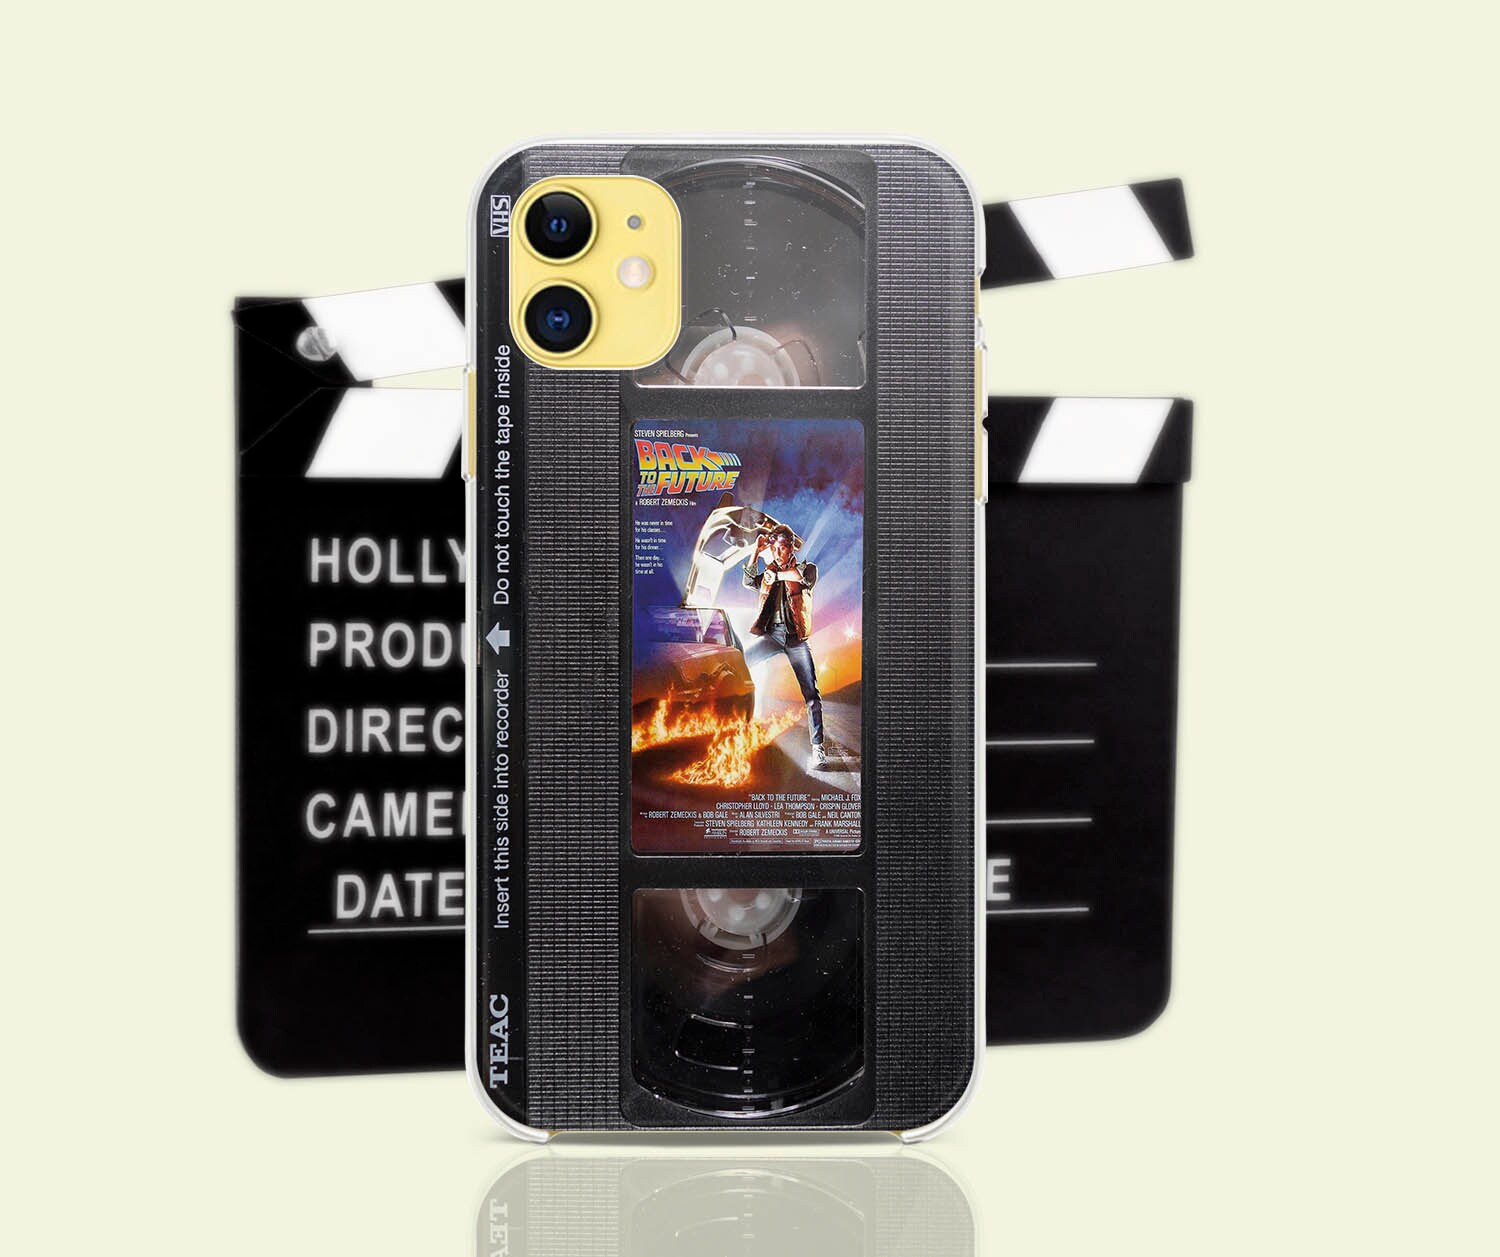 La DeLorean di Ritorno al futuro diventa una cover per iPhone